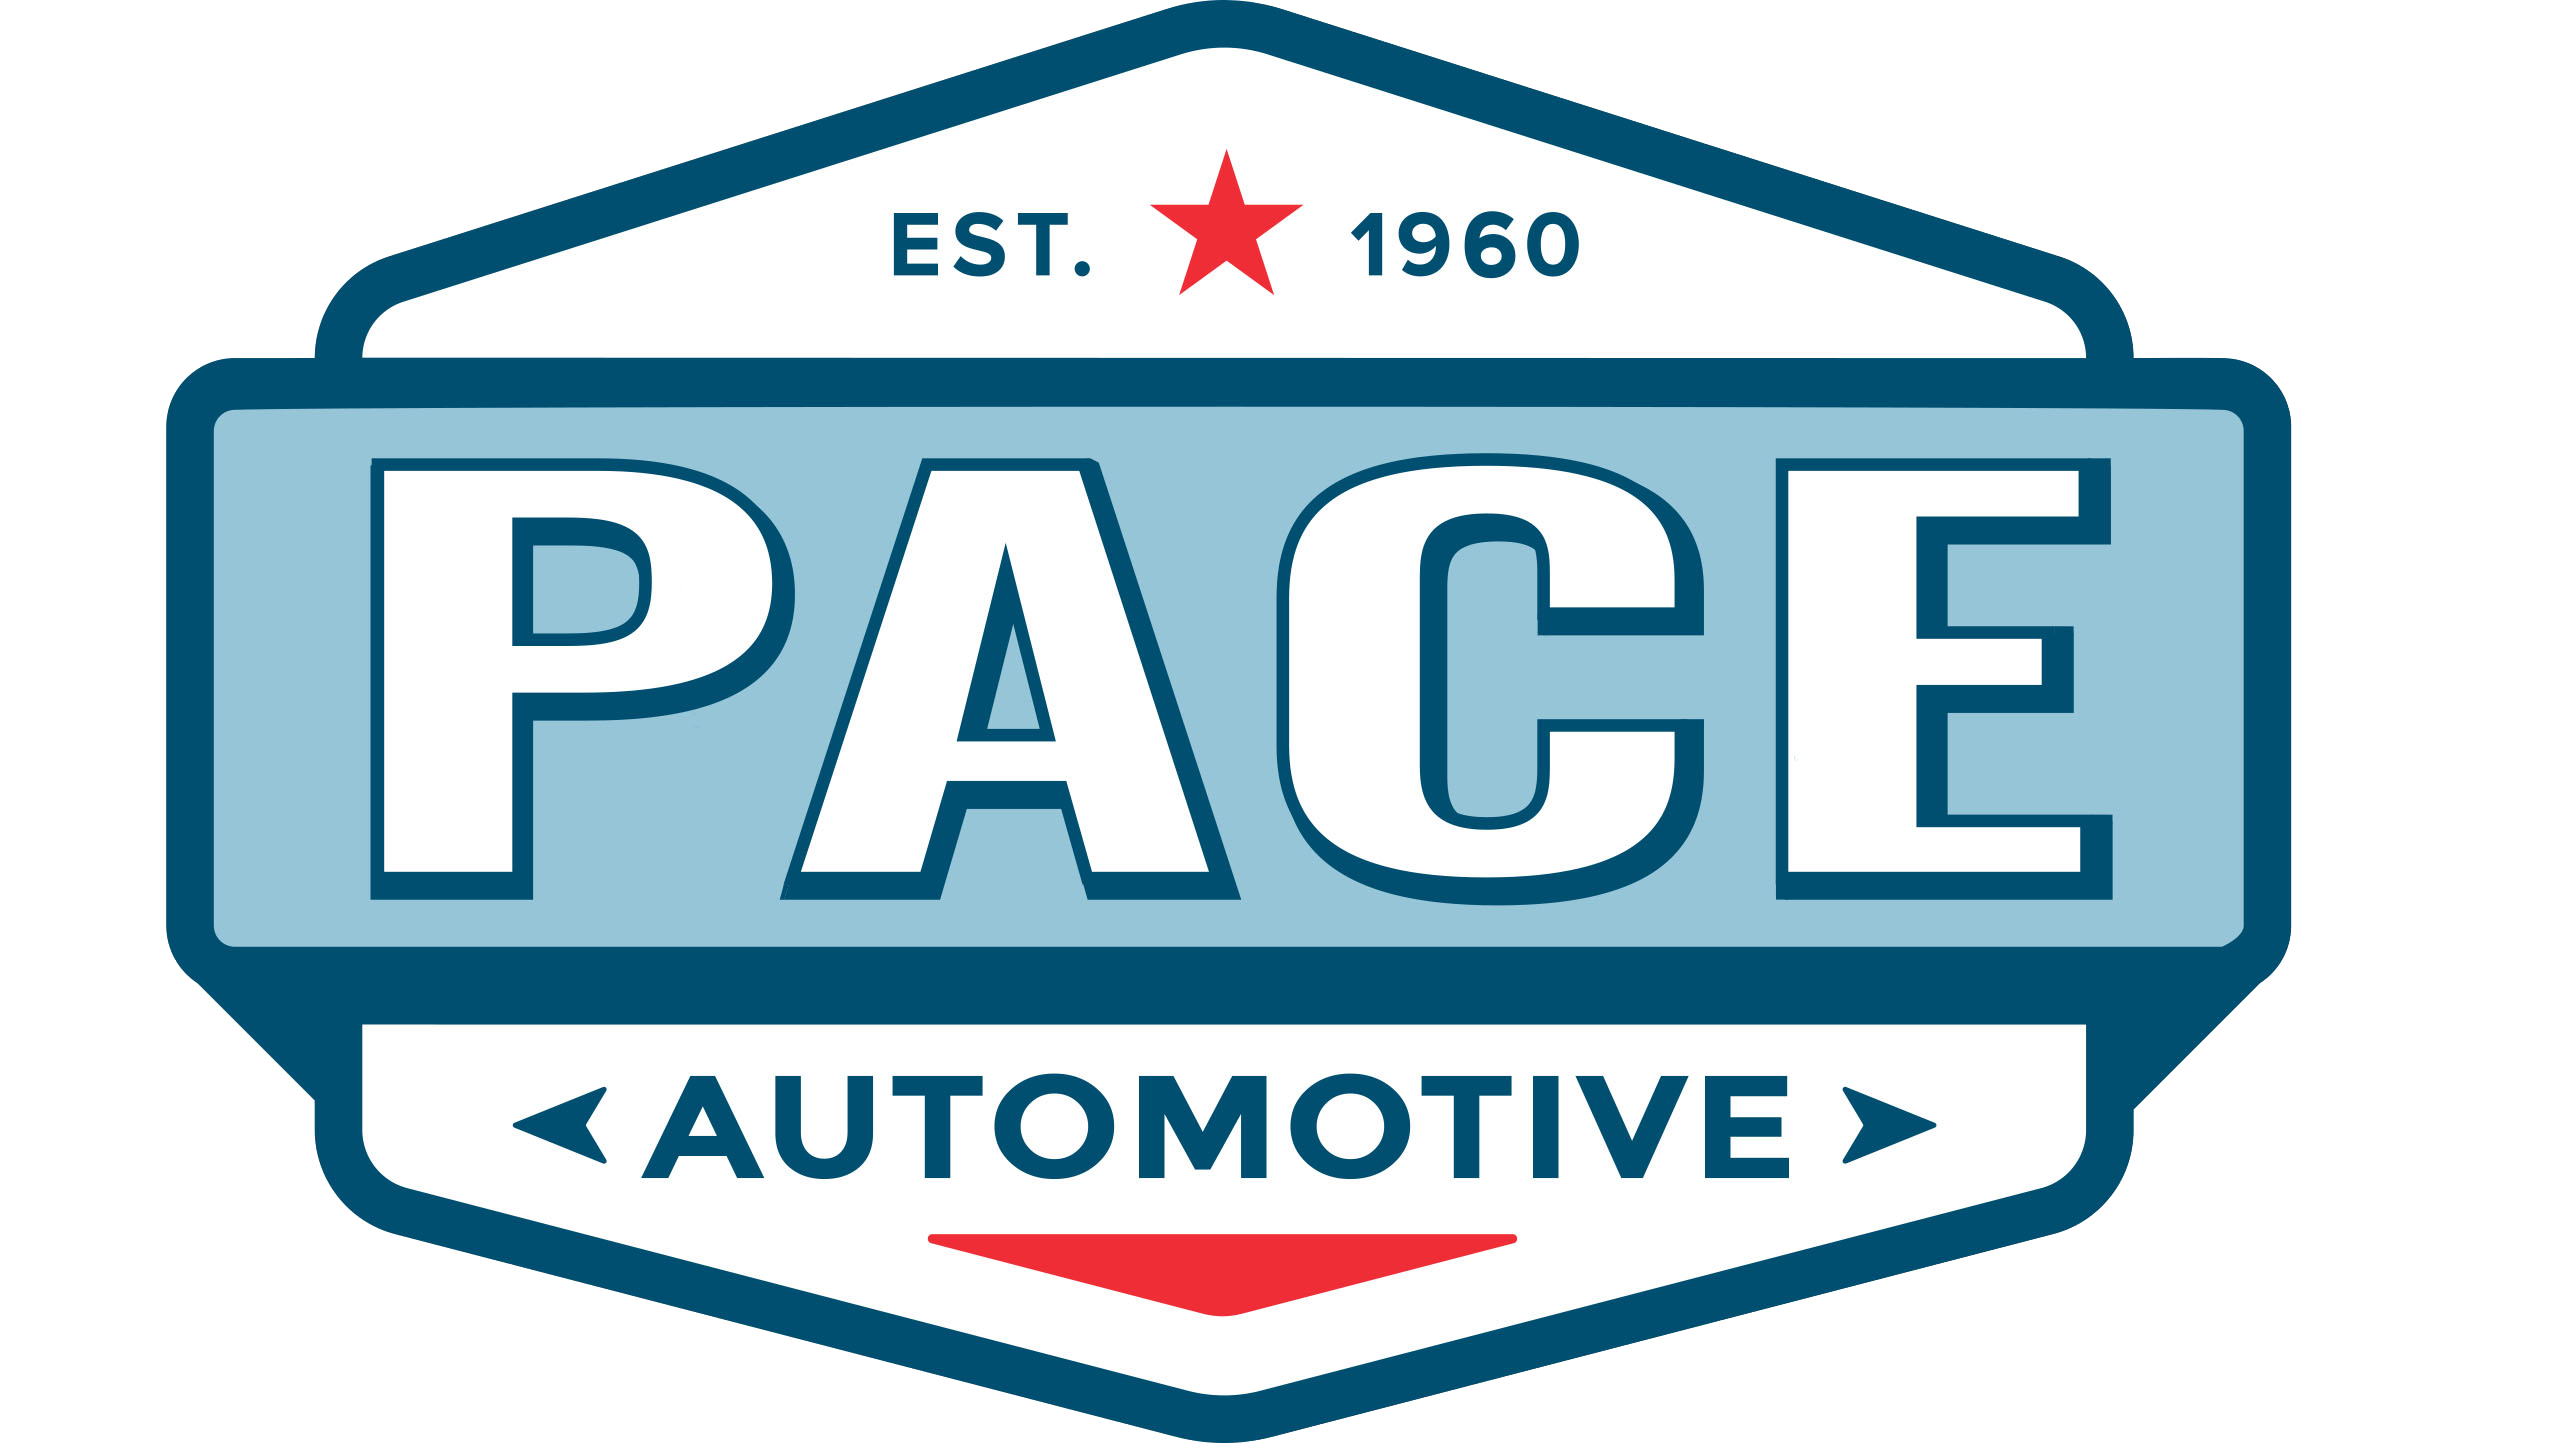 Pace's Automotive